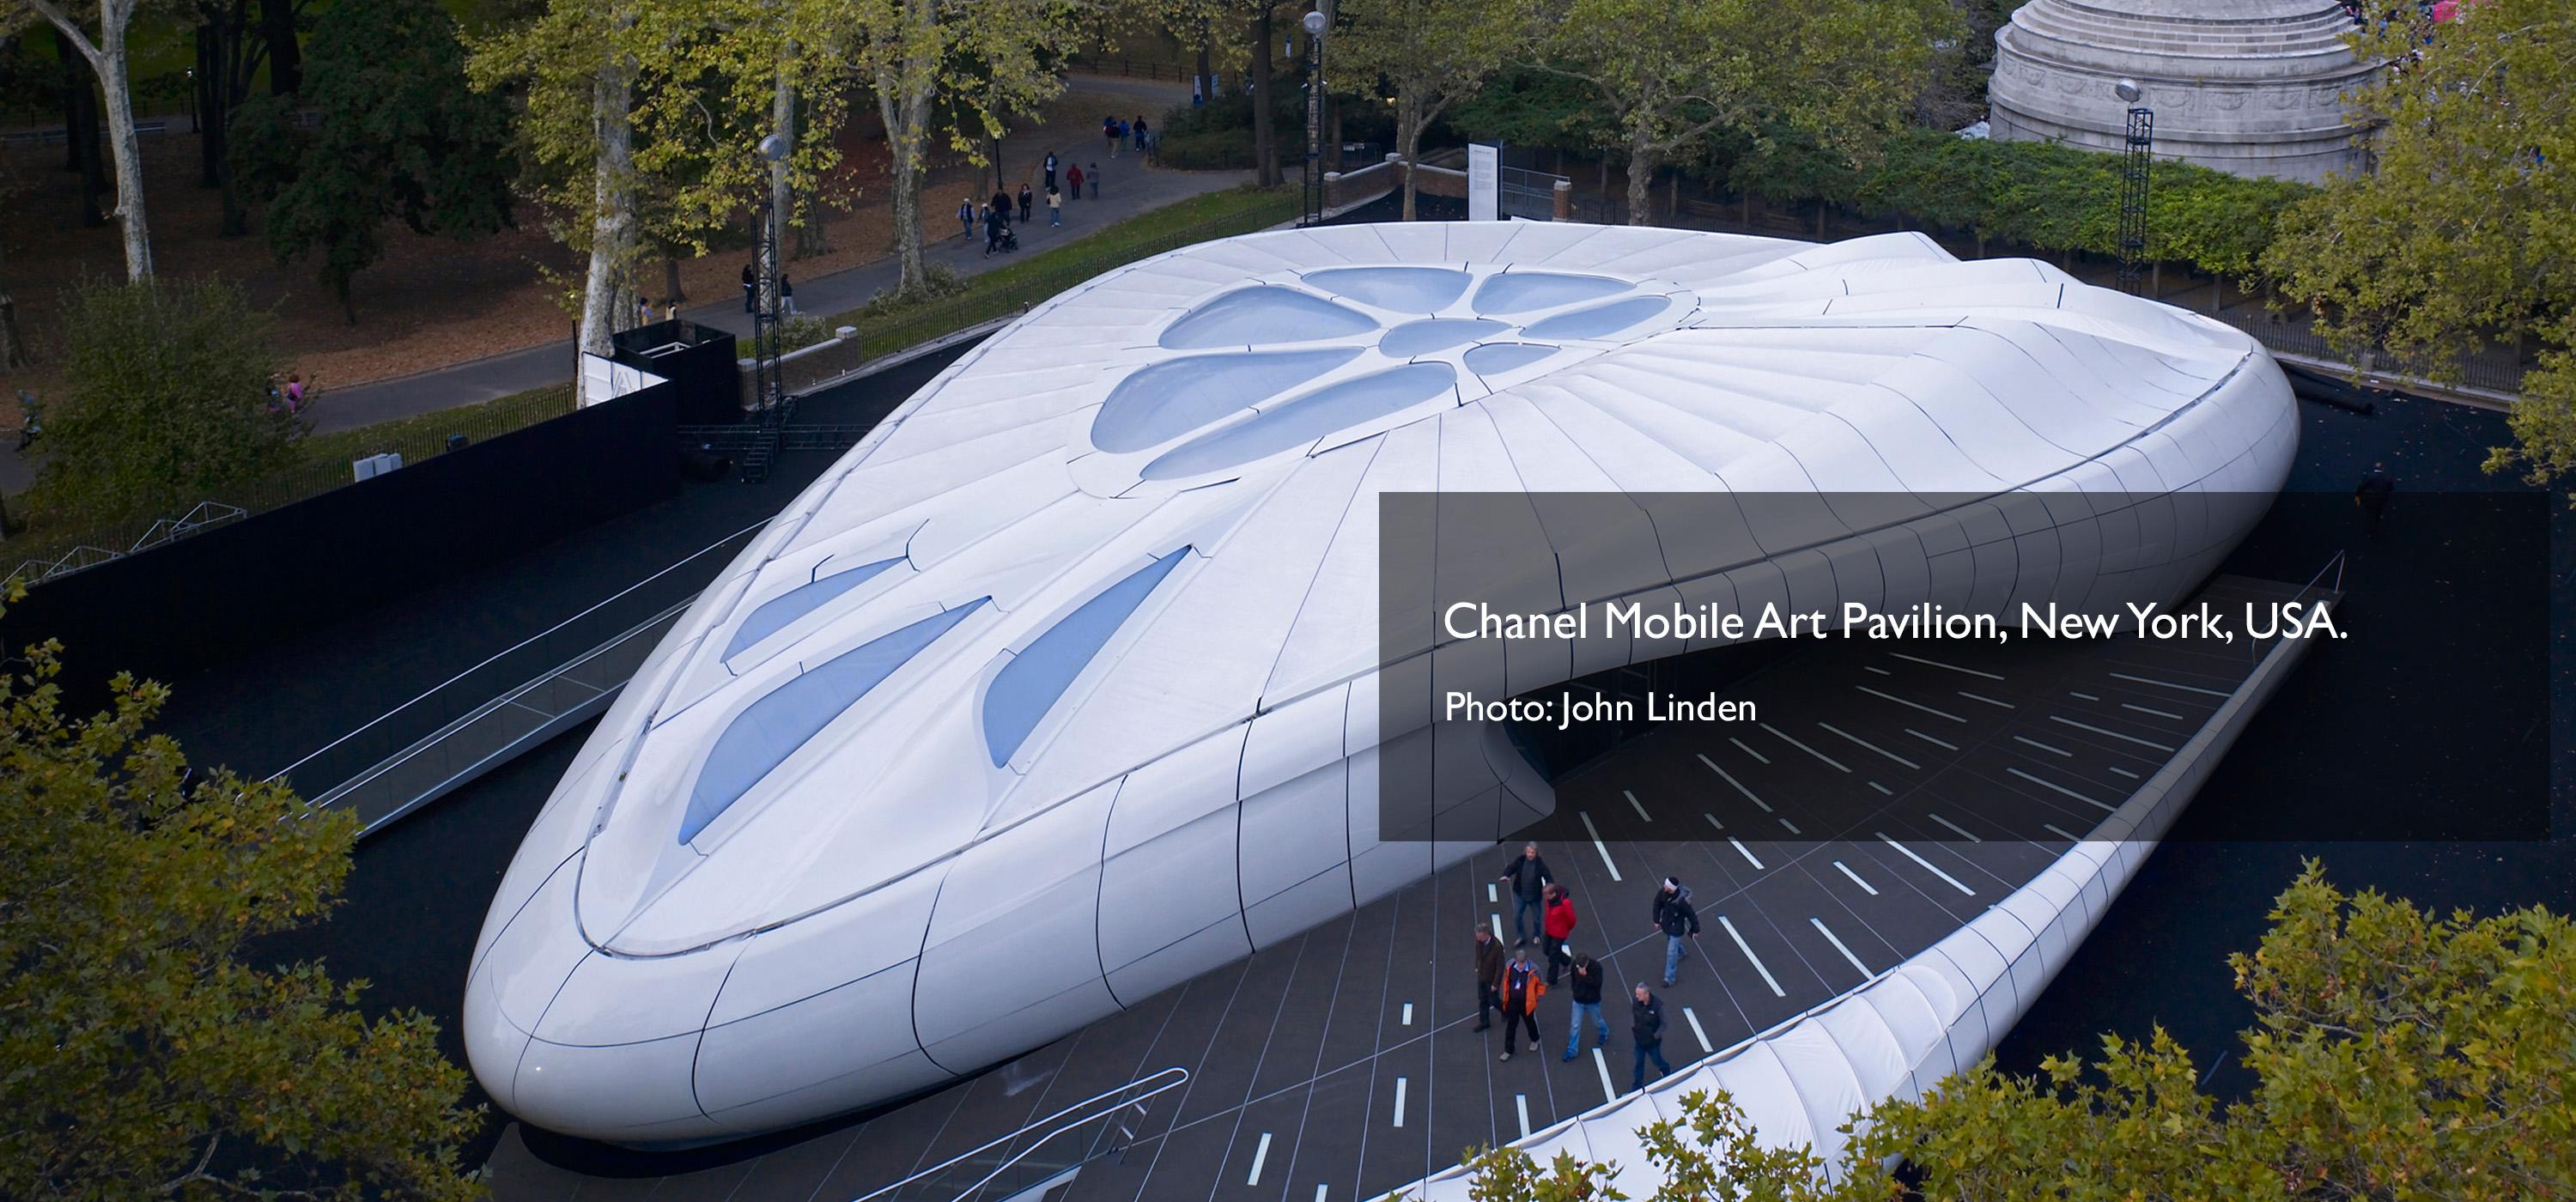 Chanel Mobile Art Pavilion